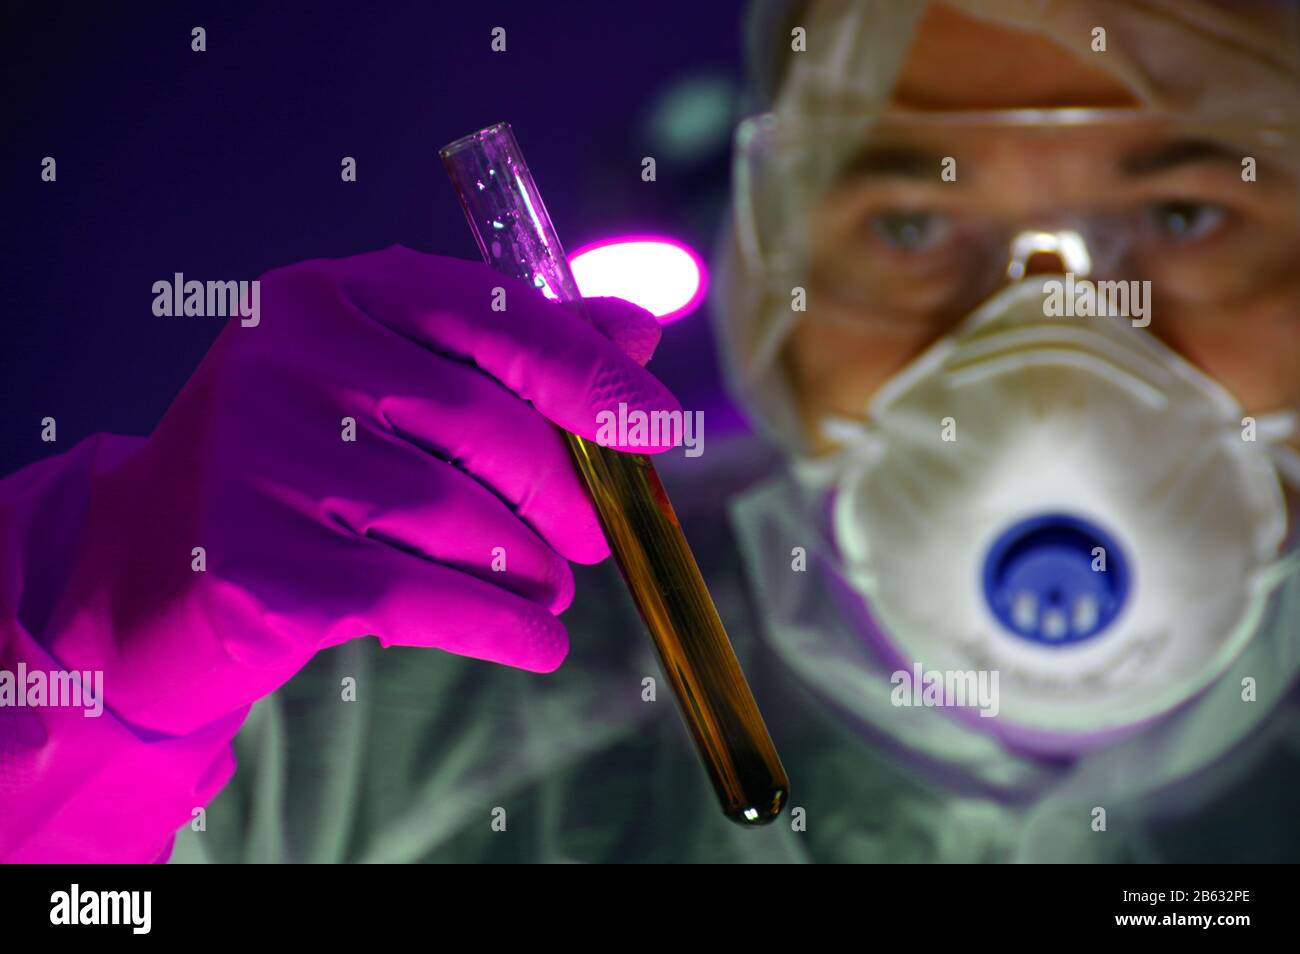 Wissenschaftler in Maske und Schutzglas mit Reagenzglas in Handschuhhand. Konzept von Labor, Wissenschaftsforschung, Biologie, Chemieexperiment, Biotechno Stockfoto